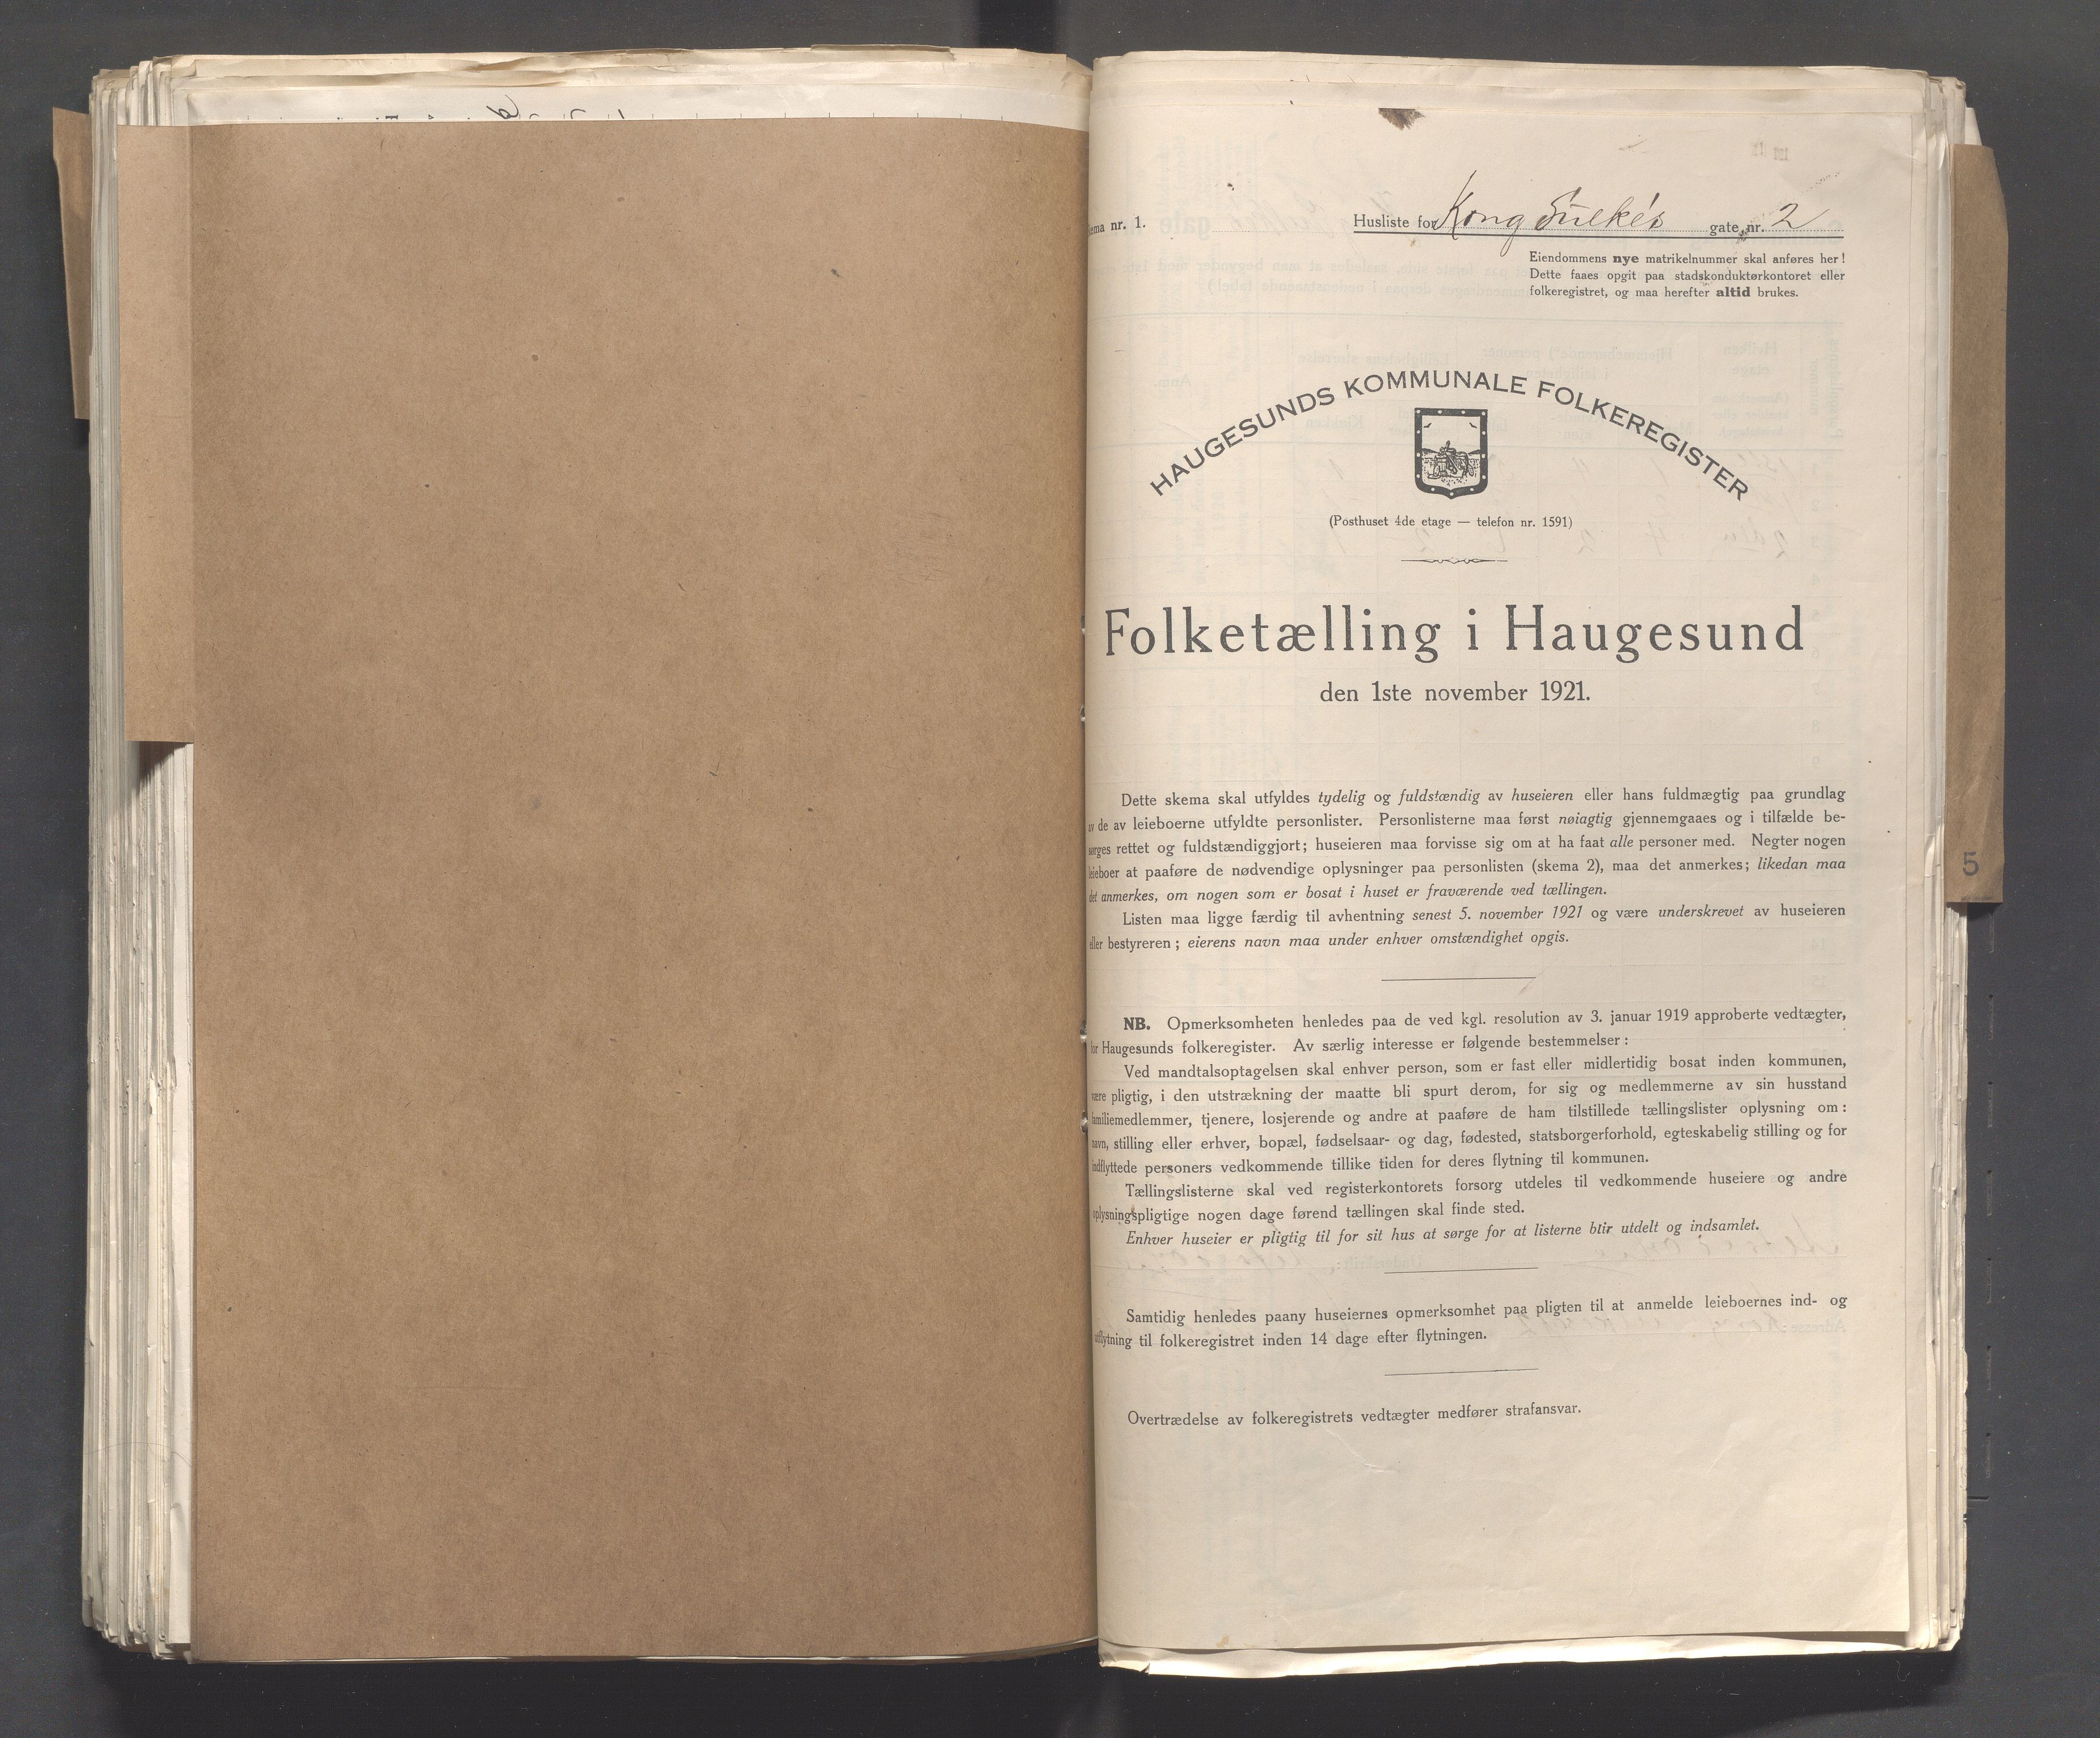 IKAR, Local census 1.11.1921 for Haugesund, 1921, p. 2933